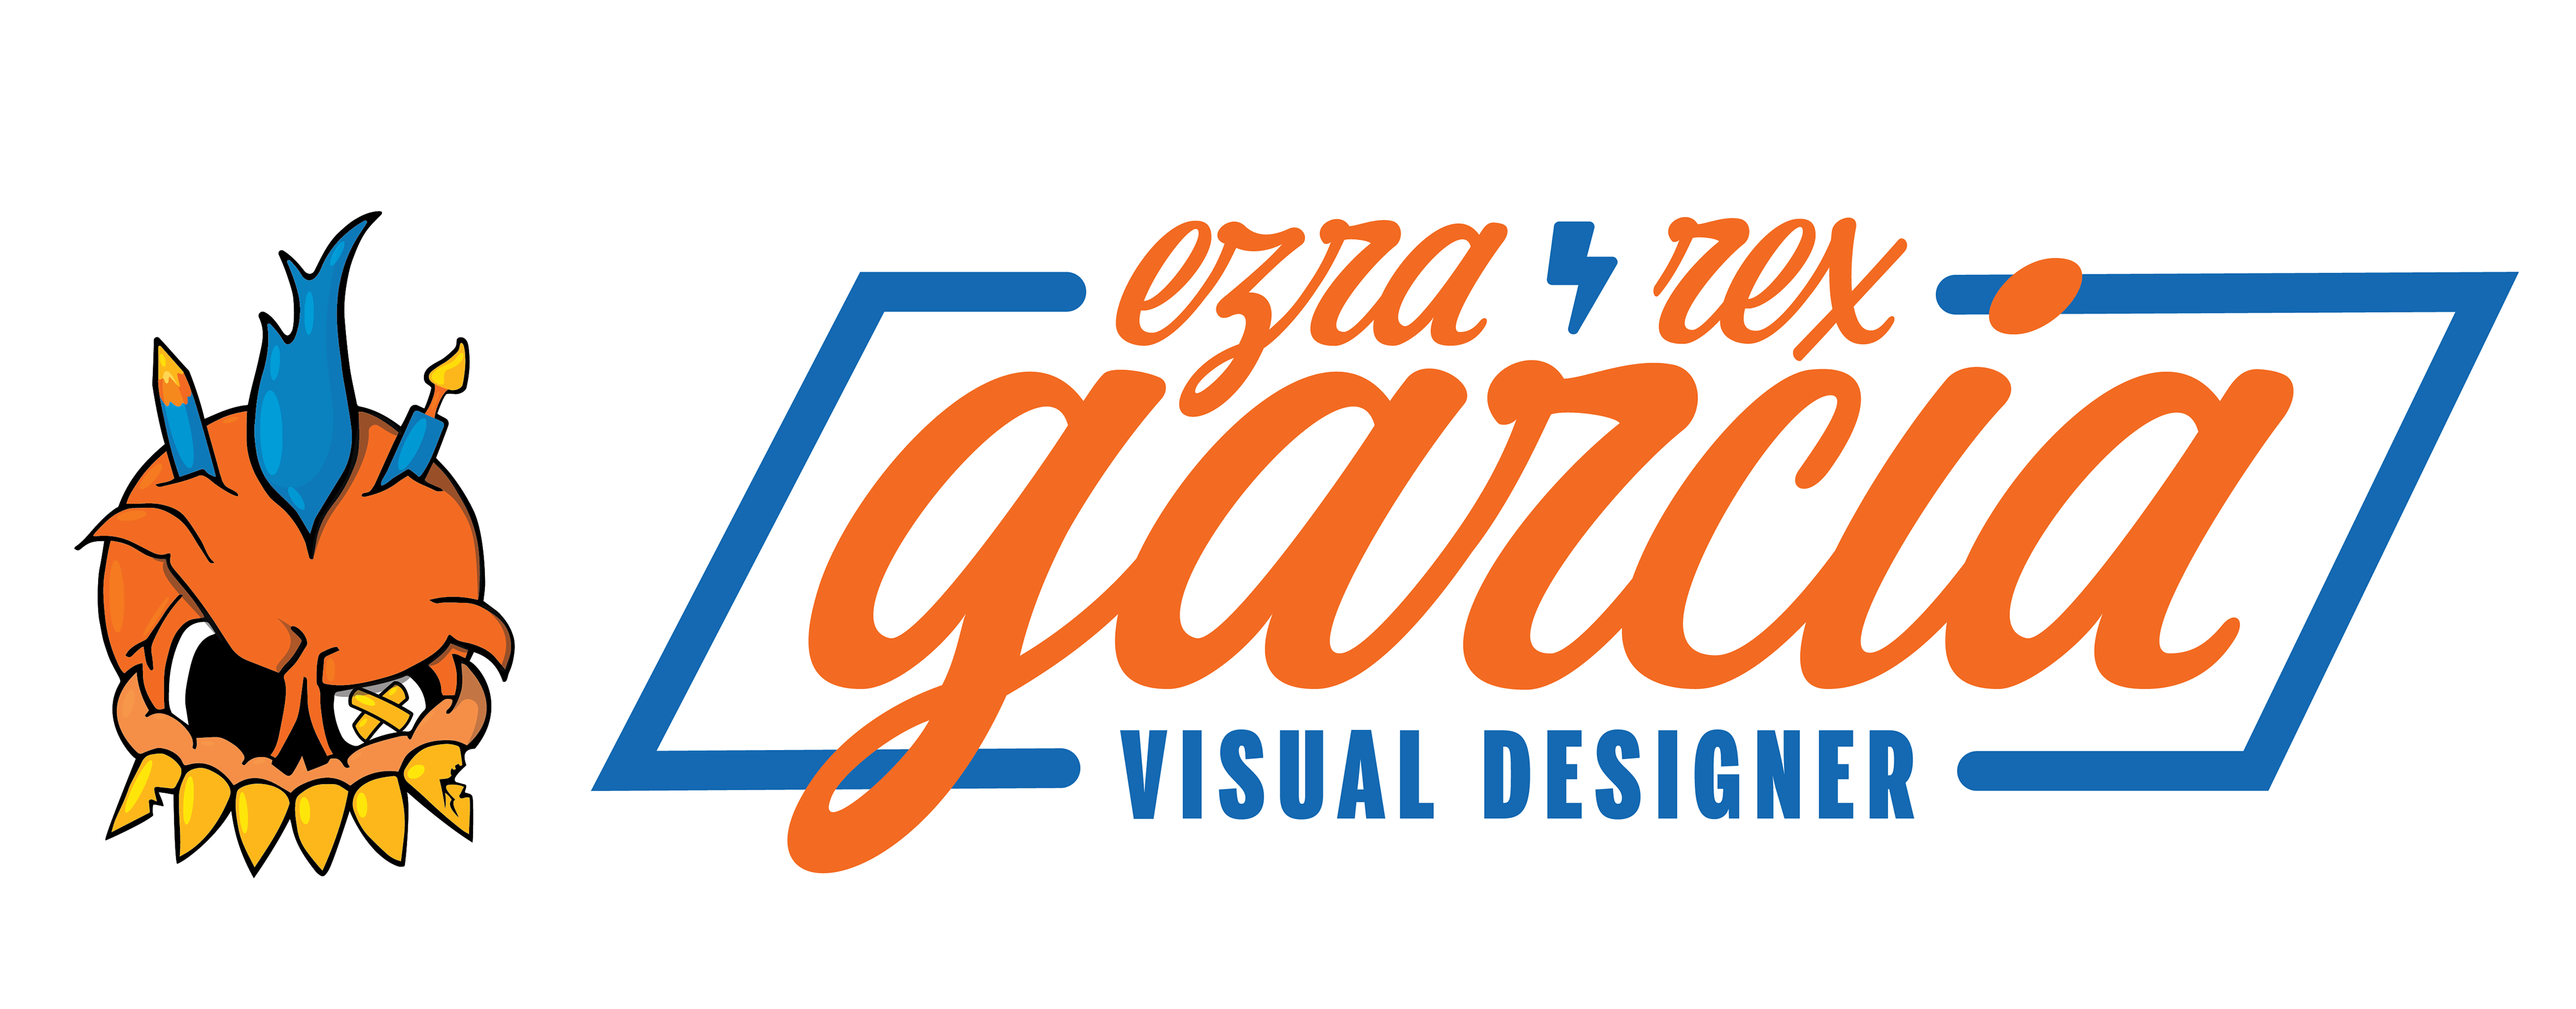 Ezra Rex Garcia // Visual Designer